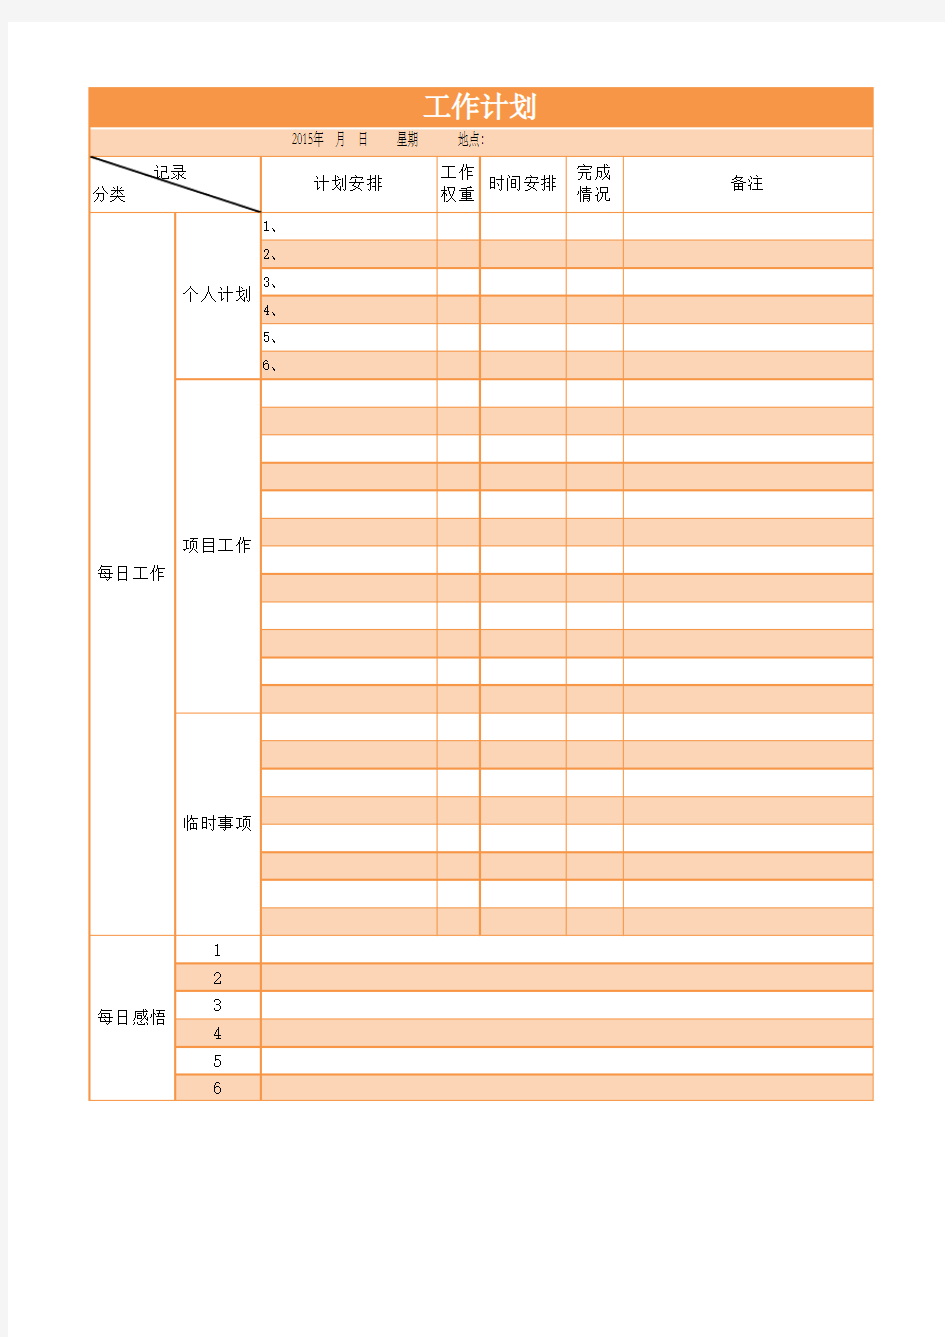 每日工作计划表-时间内容权重排序-Excel图表模板